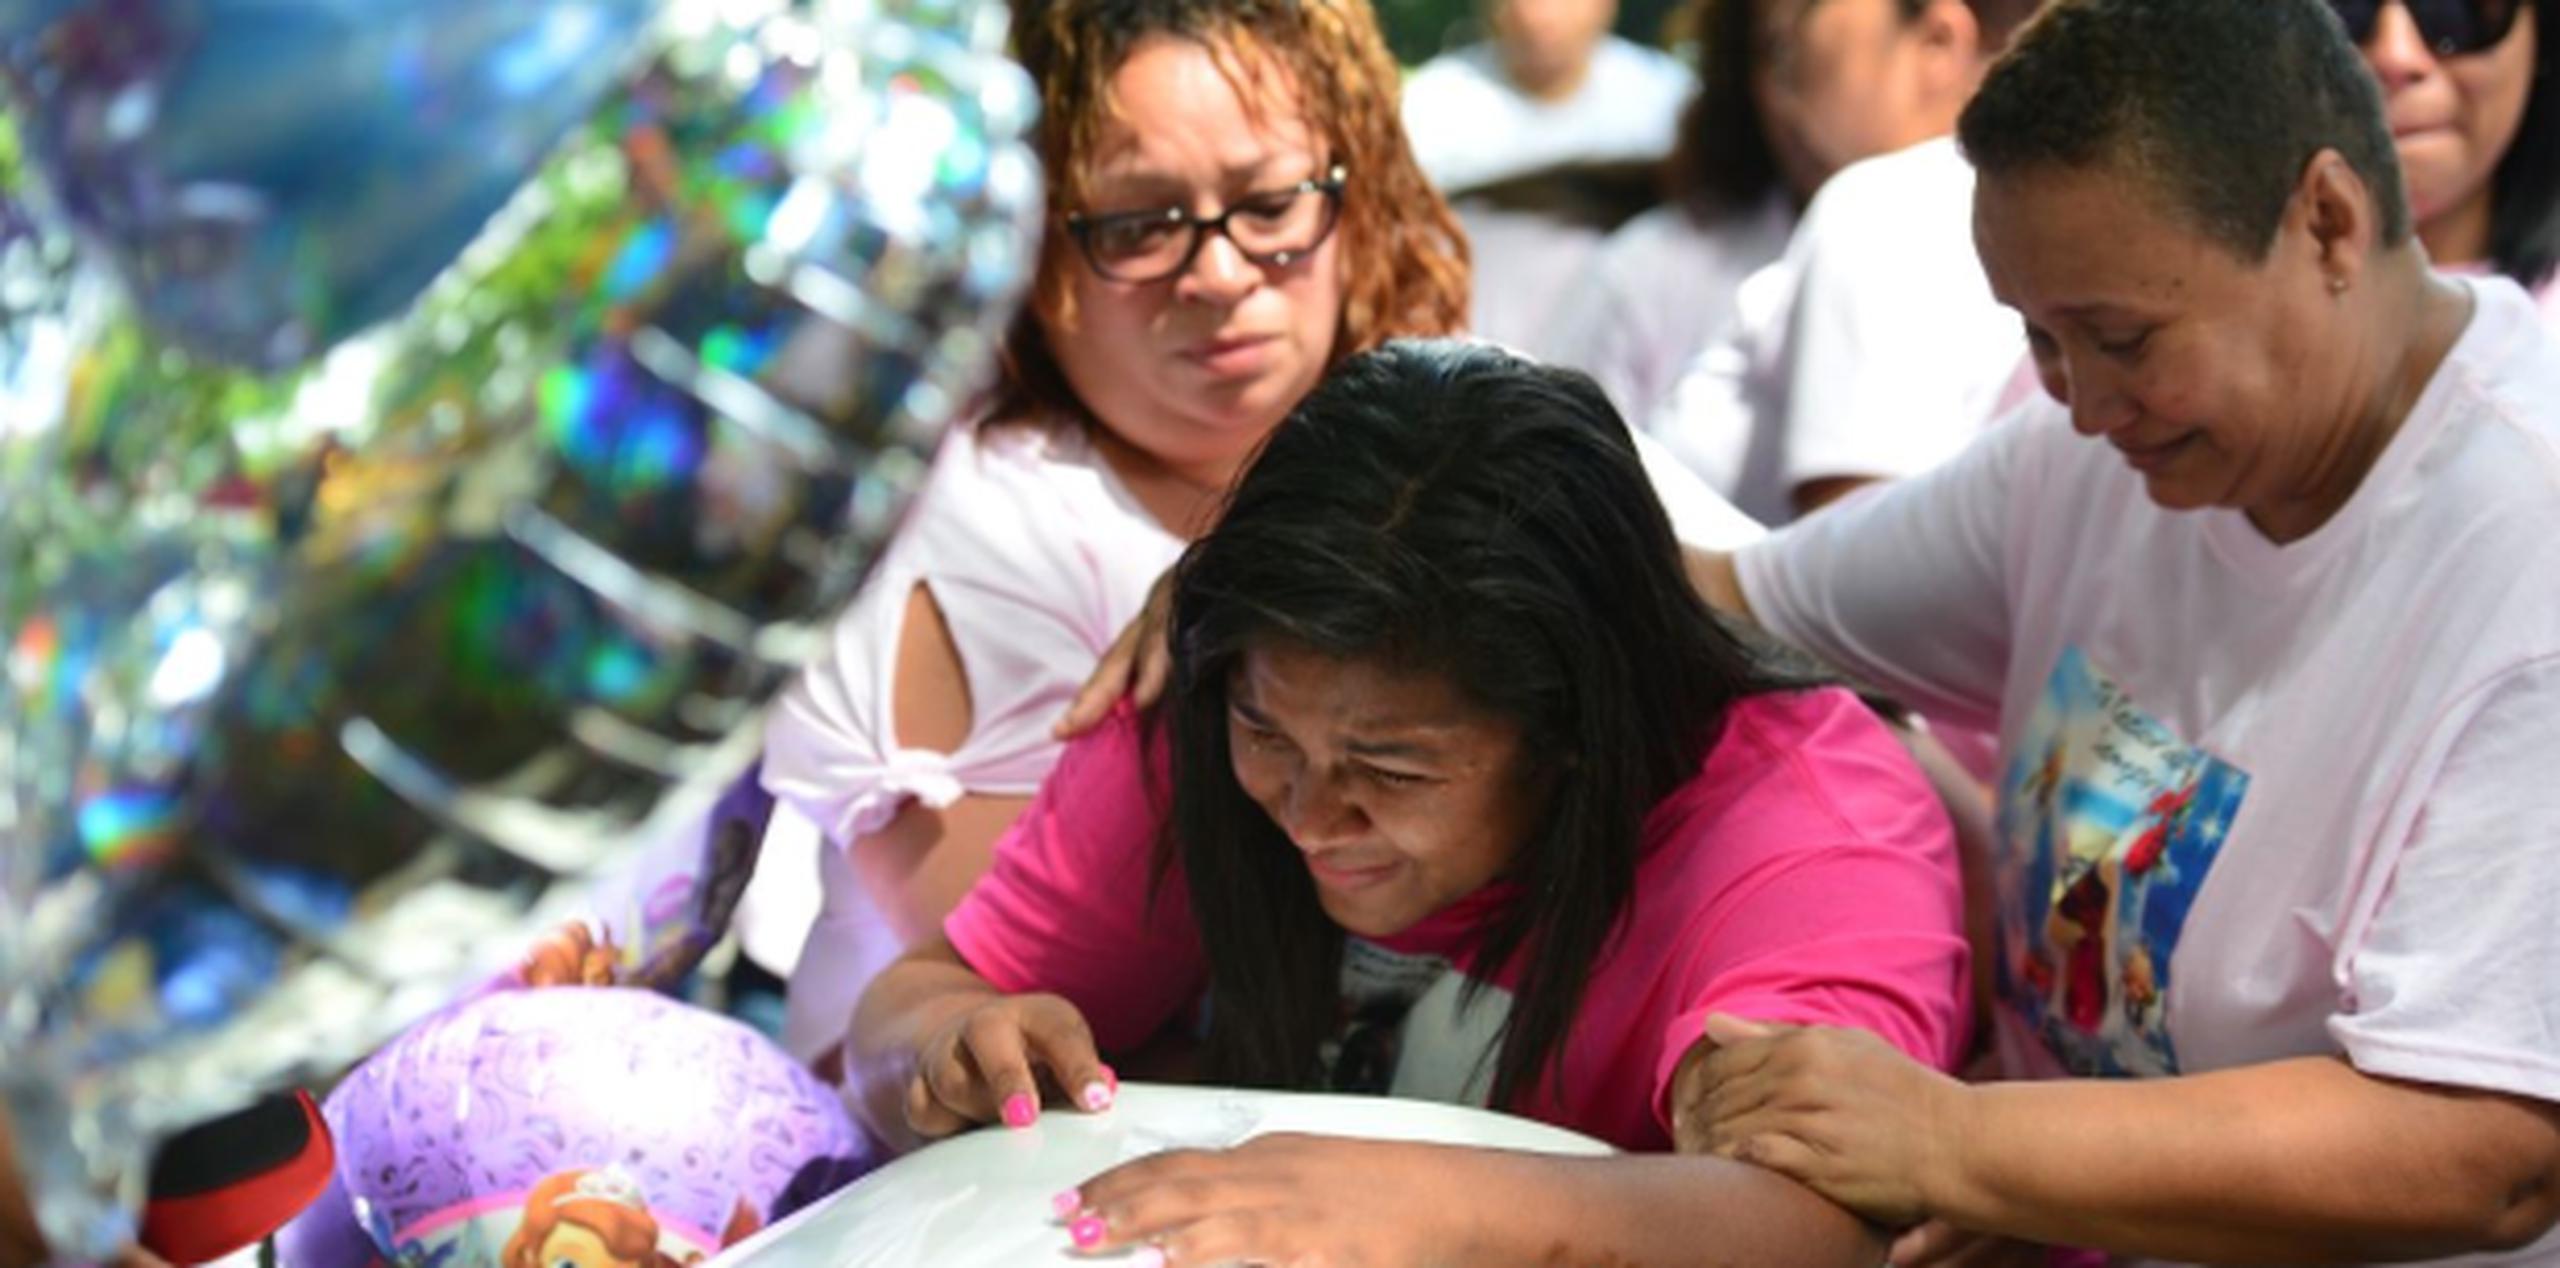 La menor murió ahogada el pasado 4 de julio en el Hogar Casa Cuna en San Juan. (luis.alcaladelolmo@gfrmedia.com)